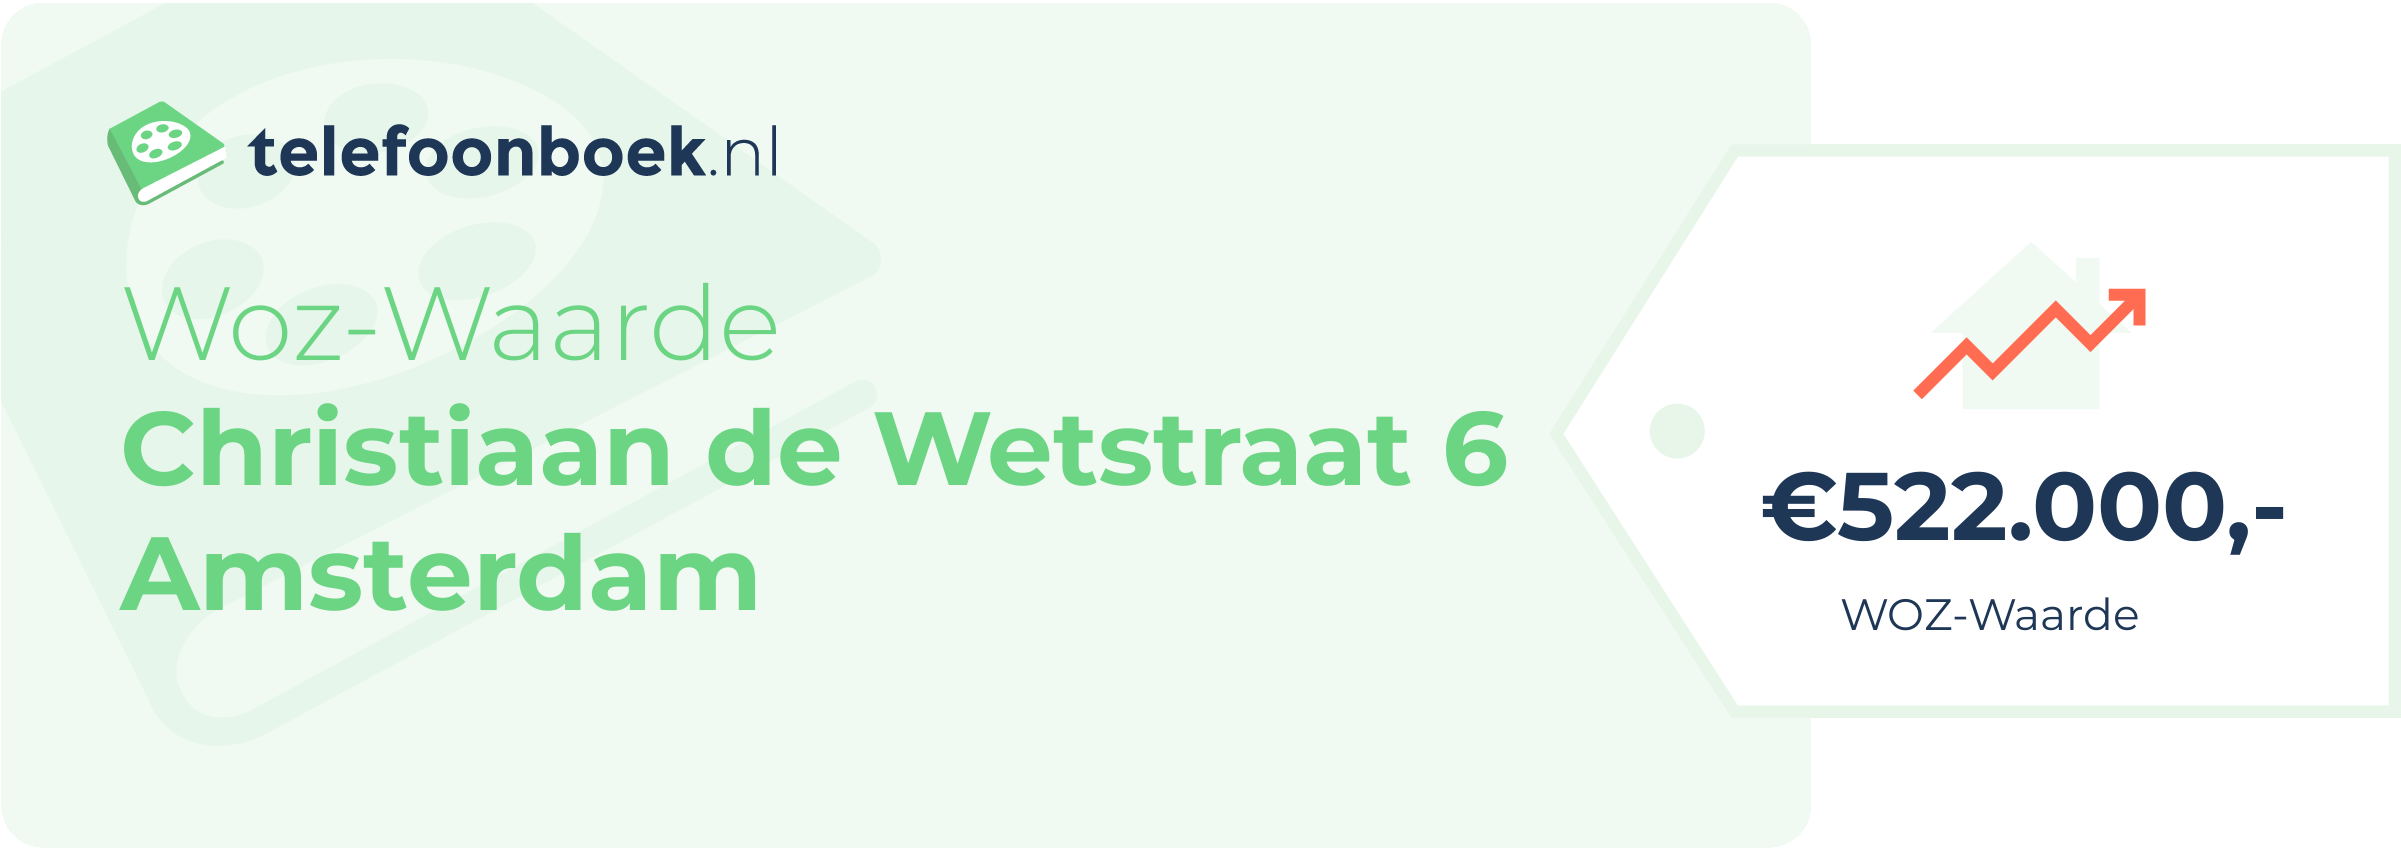 WOZ-waarde Christiaan De Wetstraat 6 Amsterdam